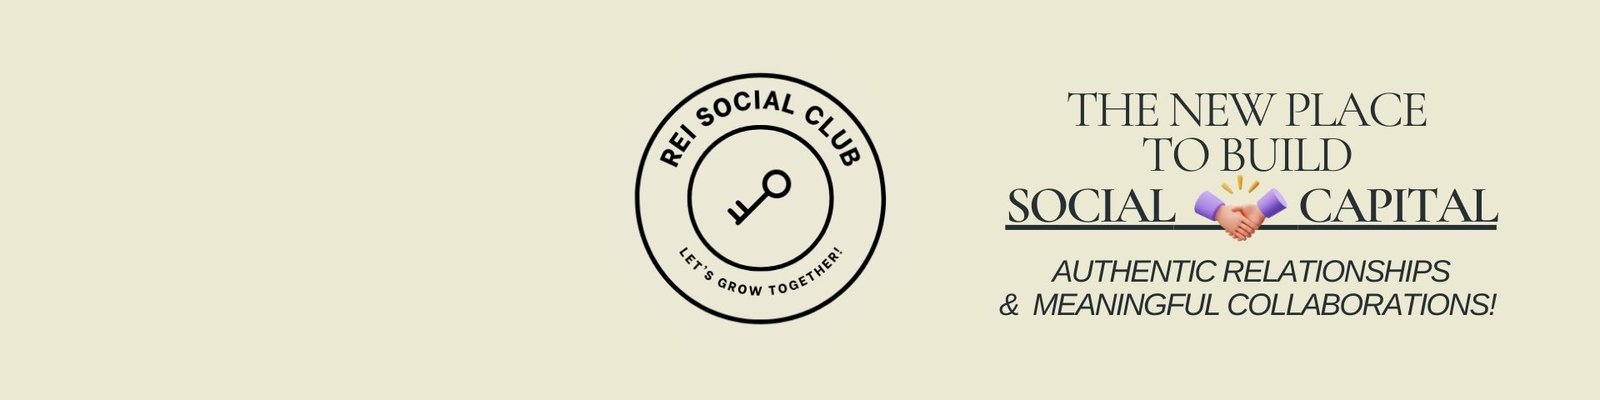 REI Social Club